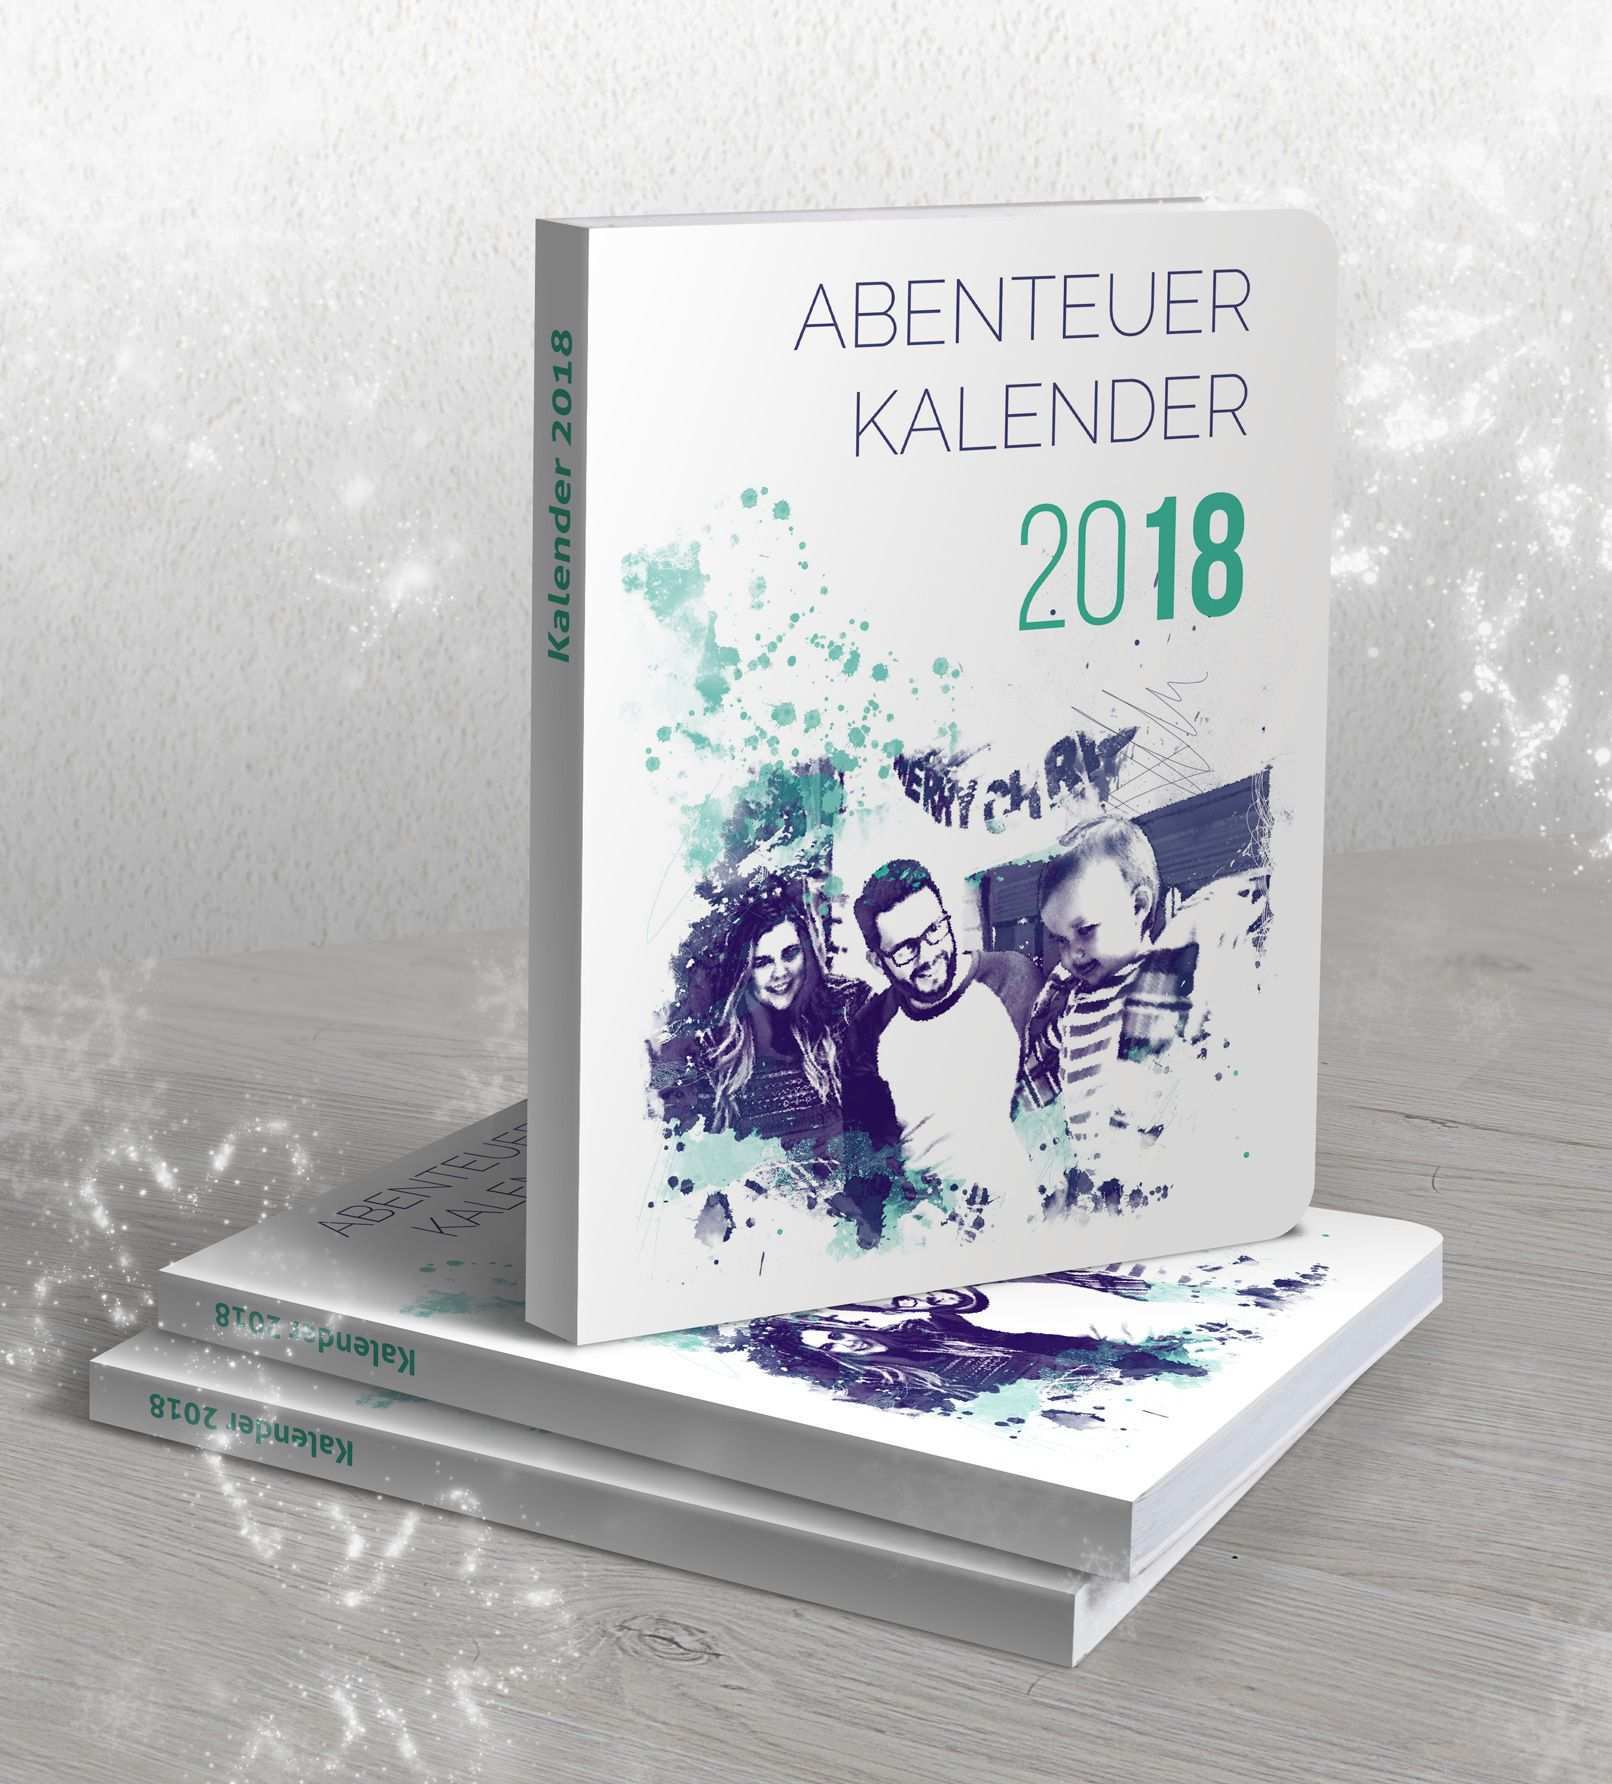 Indesign Kalendervorlagen 2018 2019 2020 Kalender Vorlagen Indesign Vorlage Kalender 2018